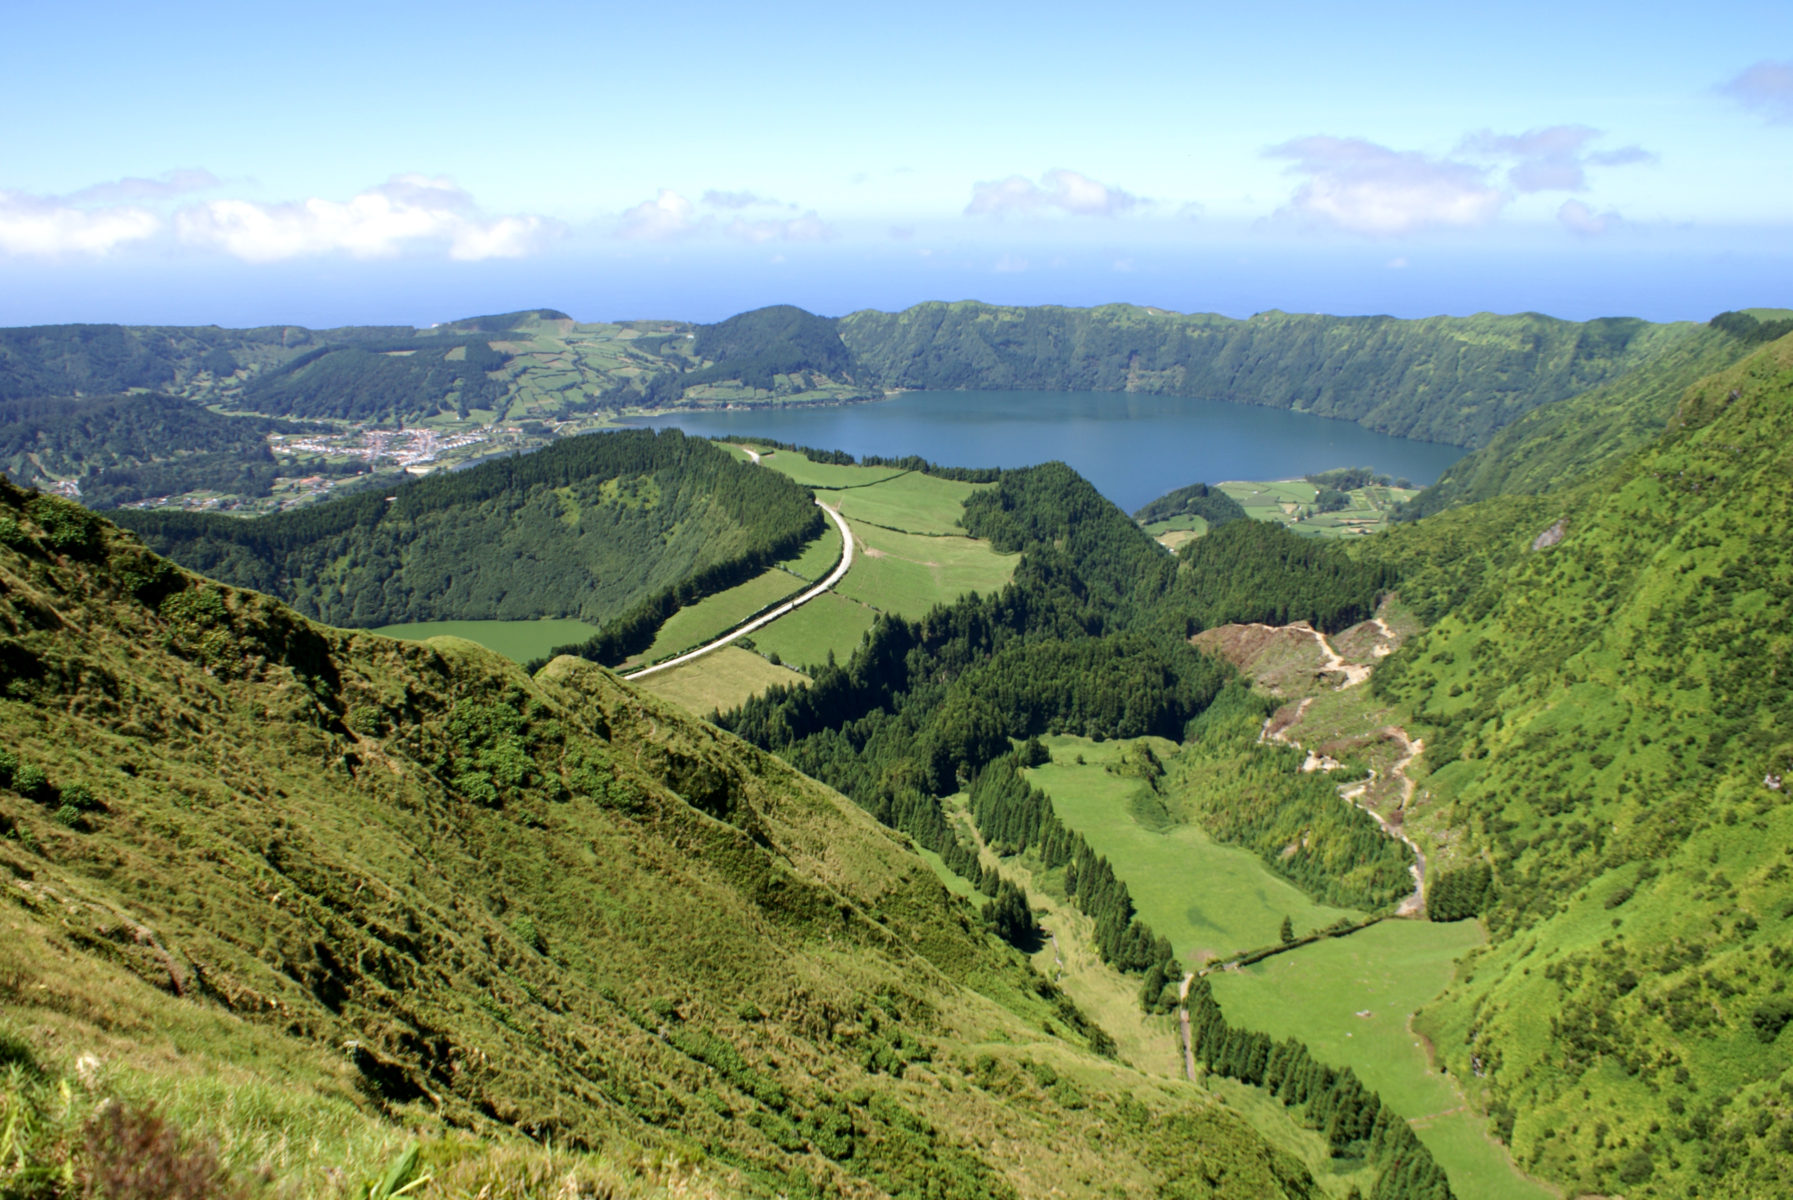 Miradouro da Grota do Inferno - São Miguel, Açores